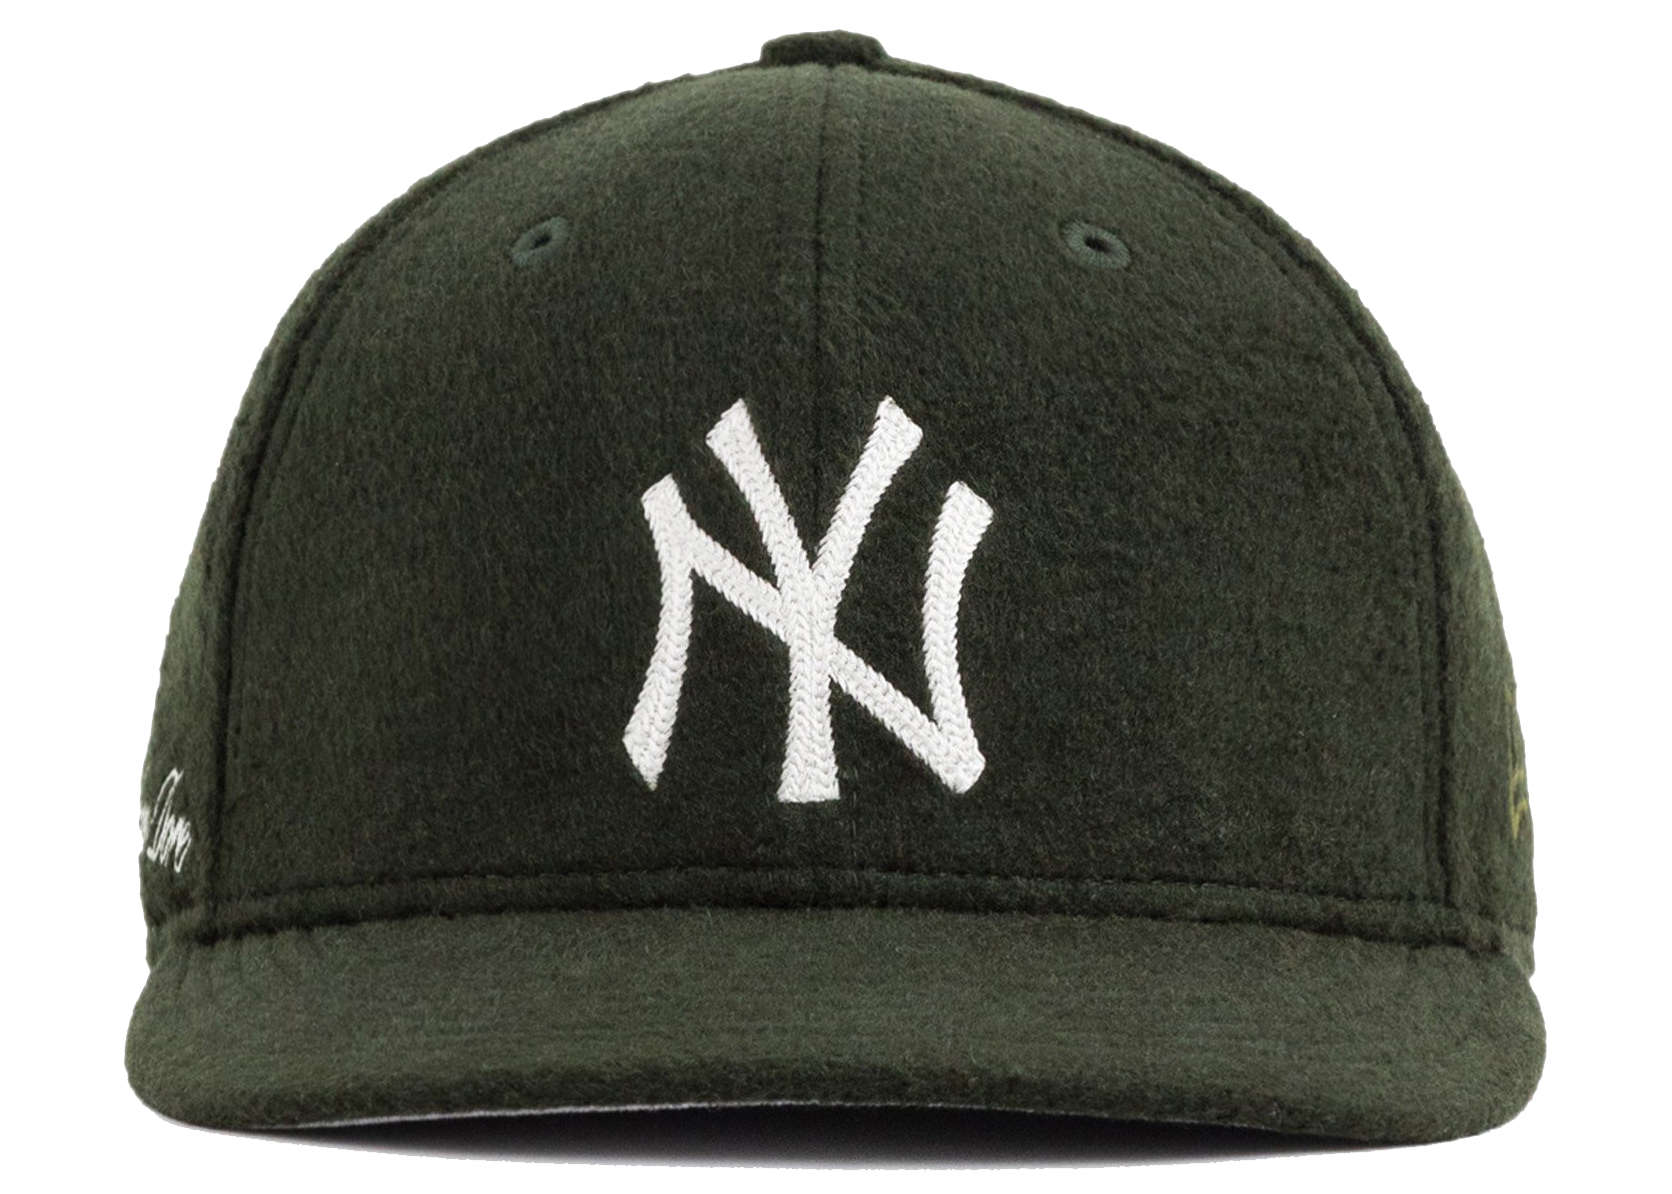 Aime Leon Dore x New Era Moleskin Yankees Hat Green